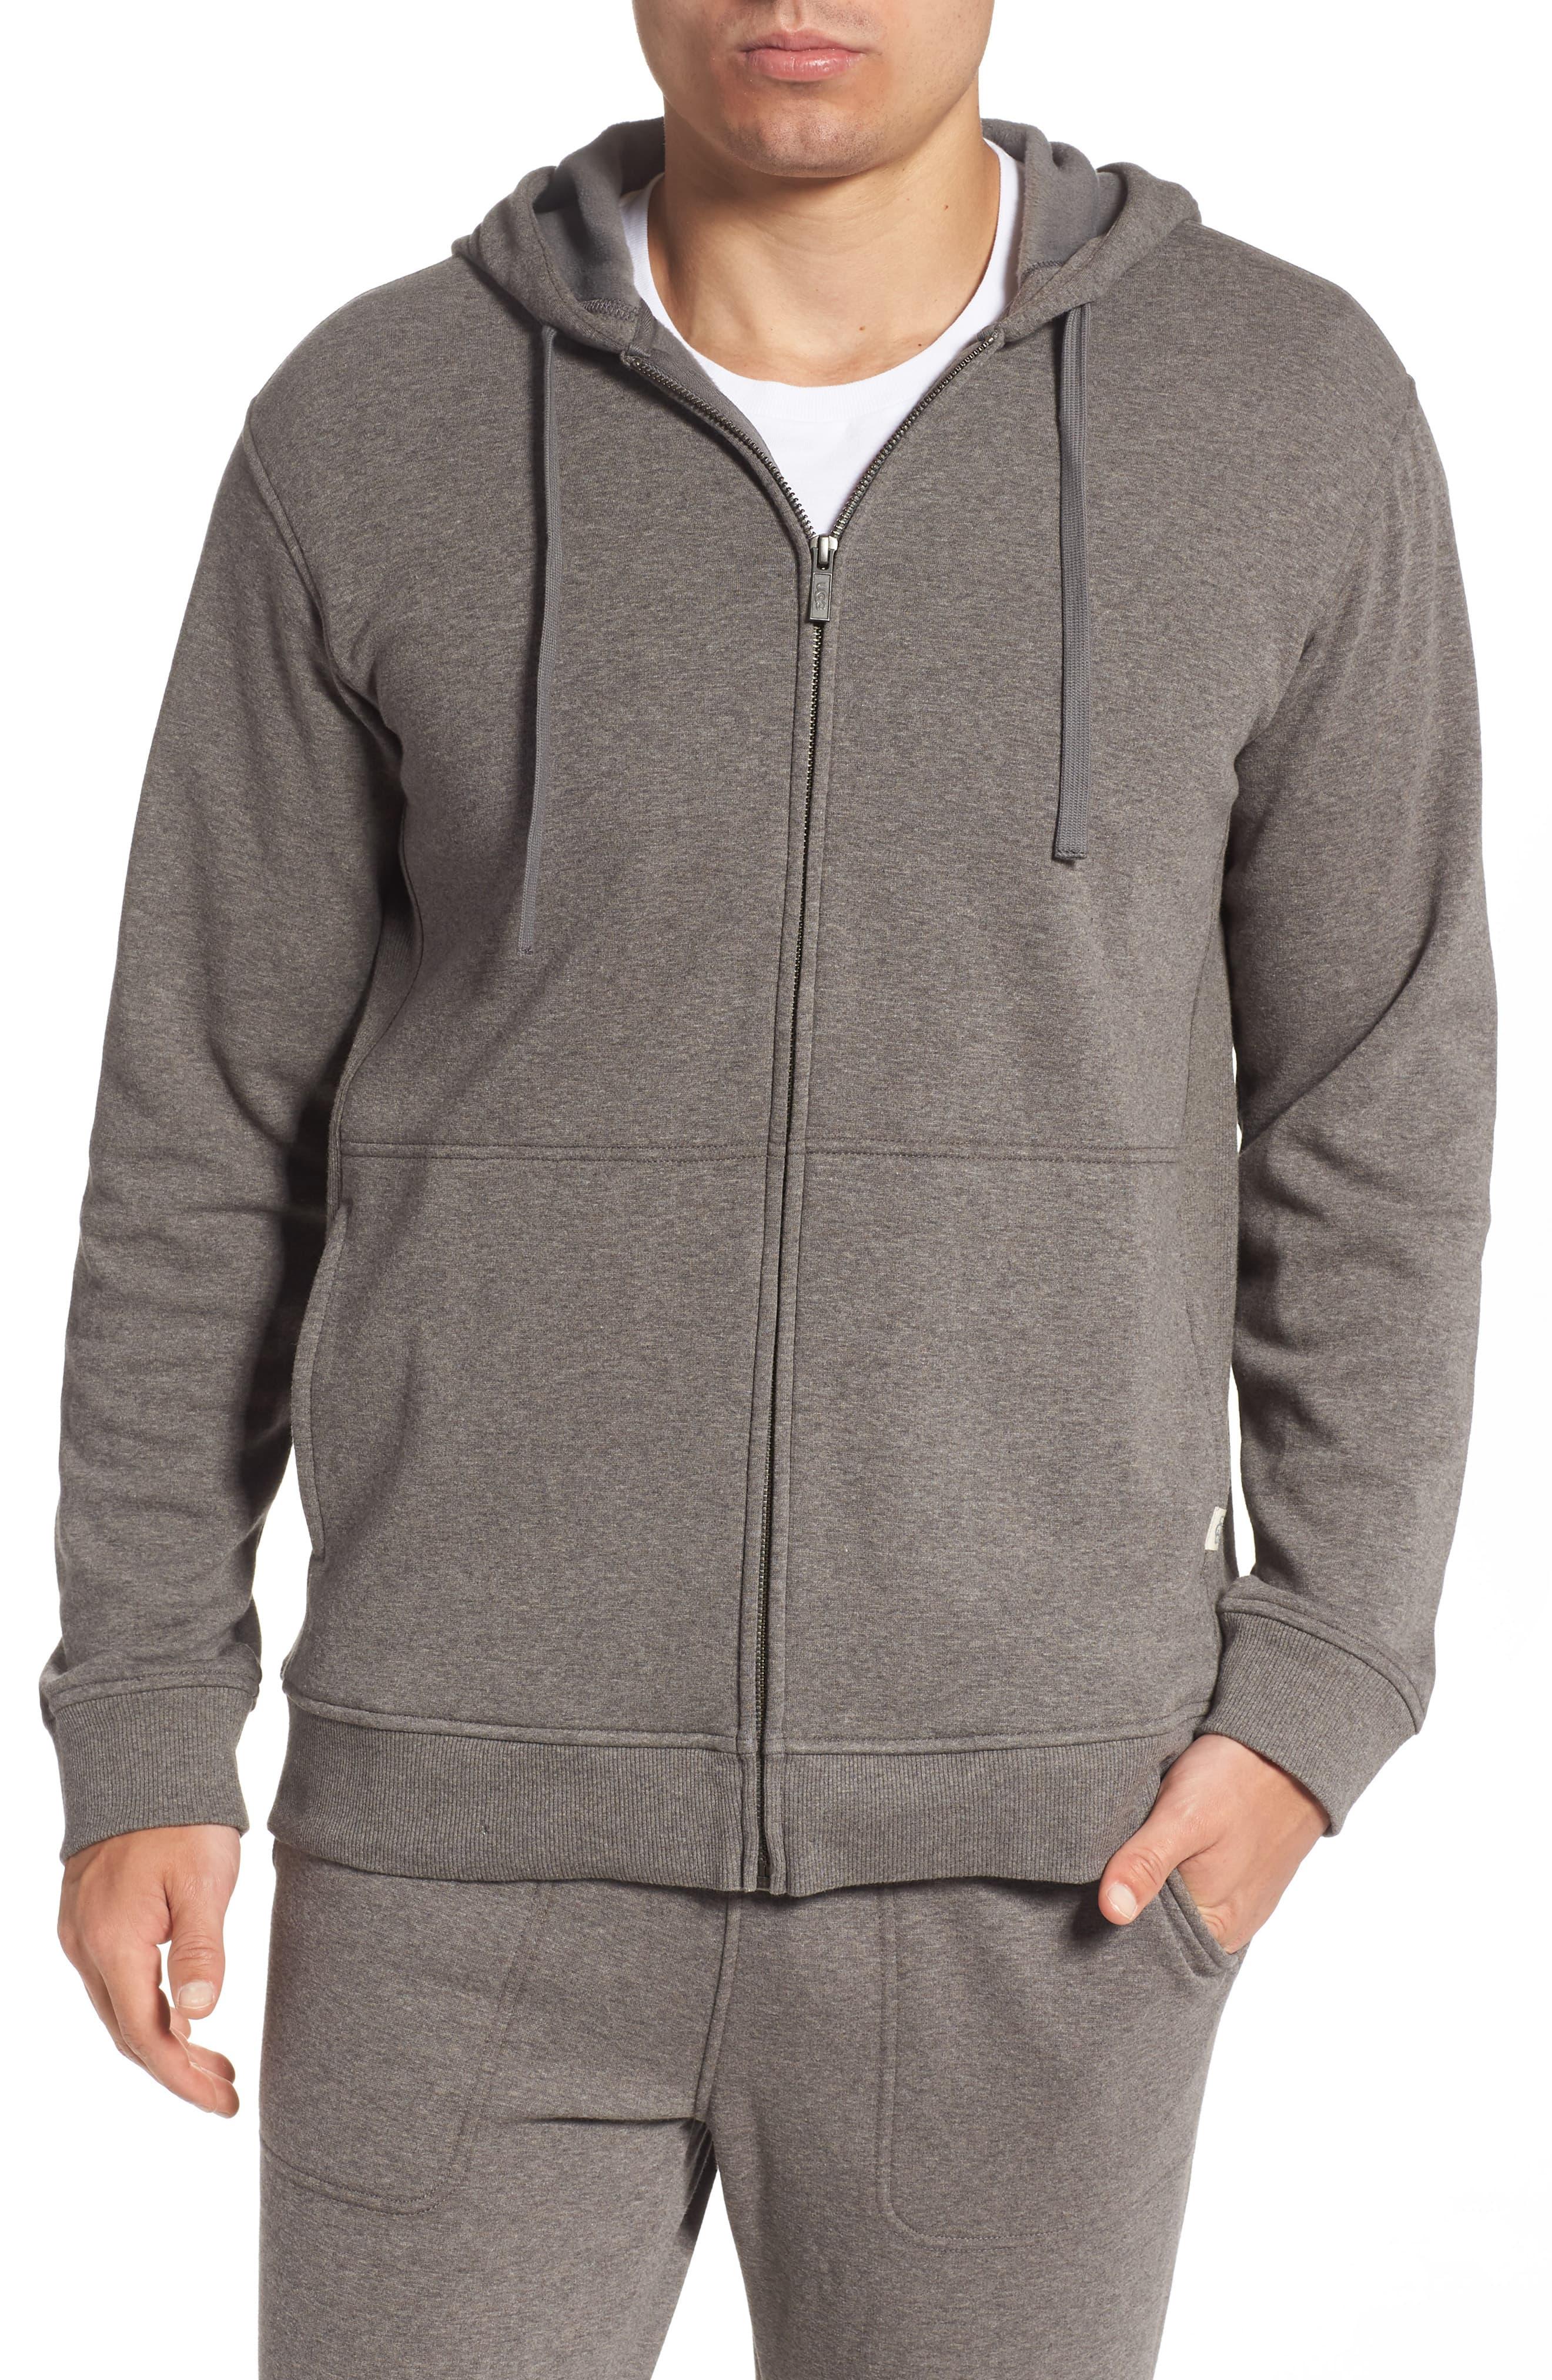 UGG Cotton UGG Gordon Zip Hoodie in Grey (Gray) for Men - Lyst